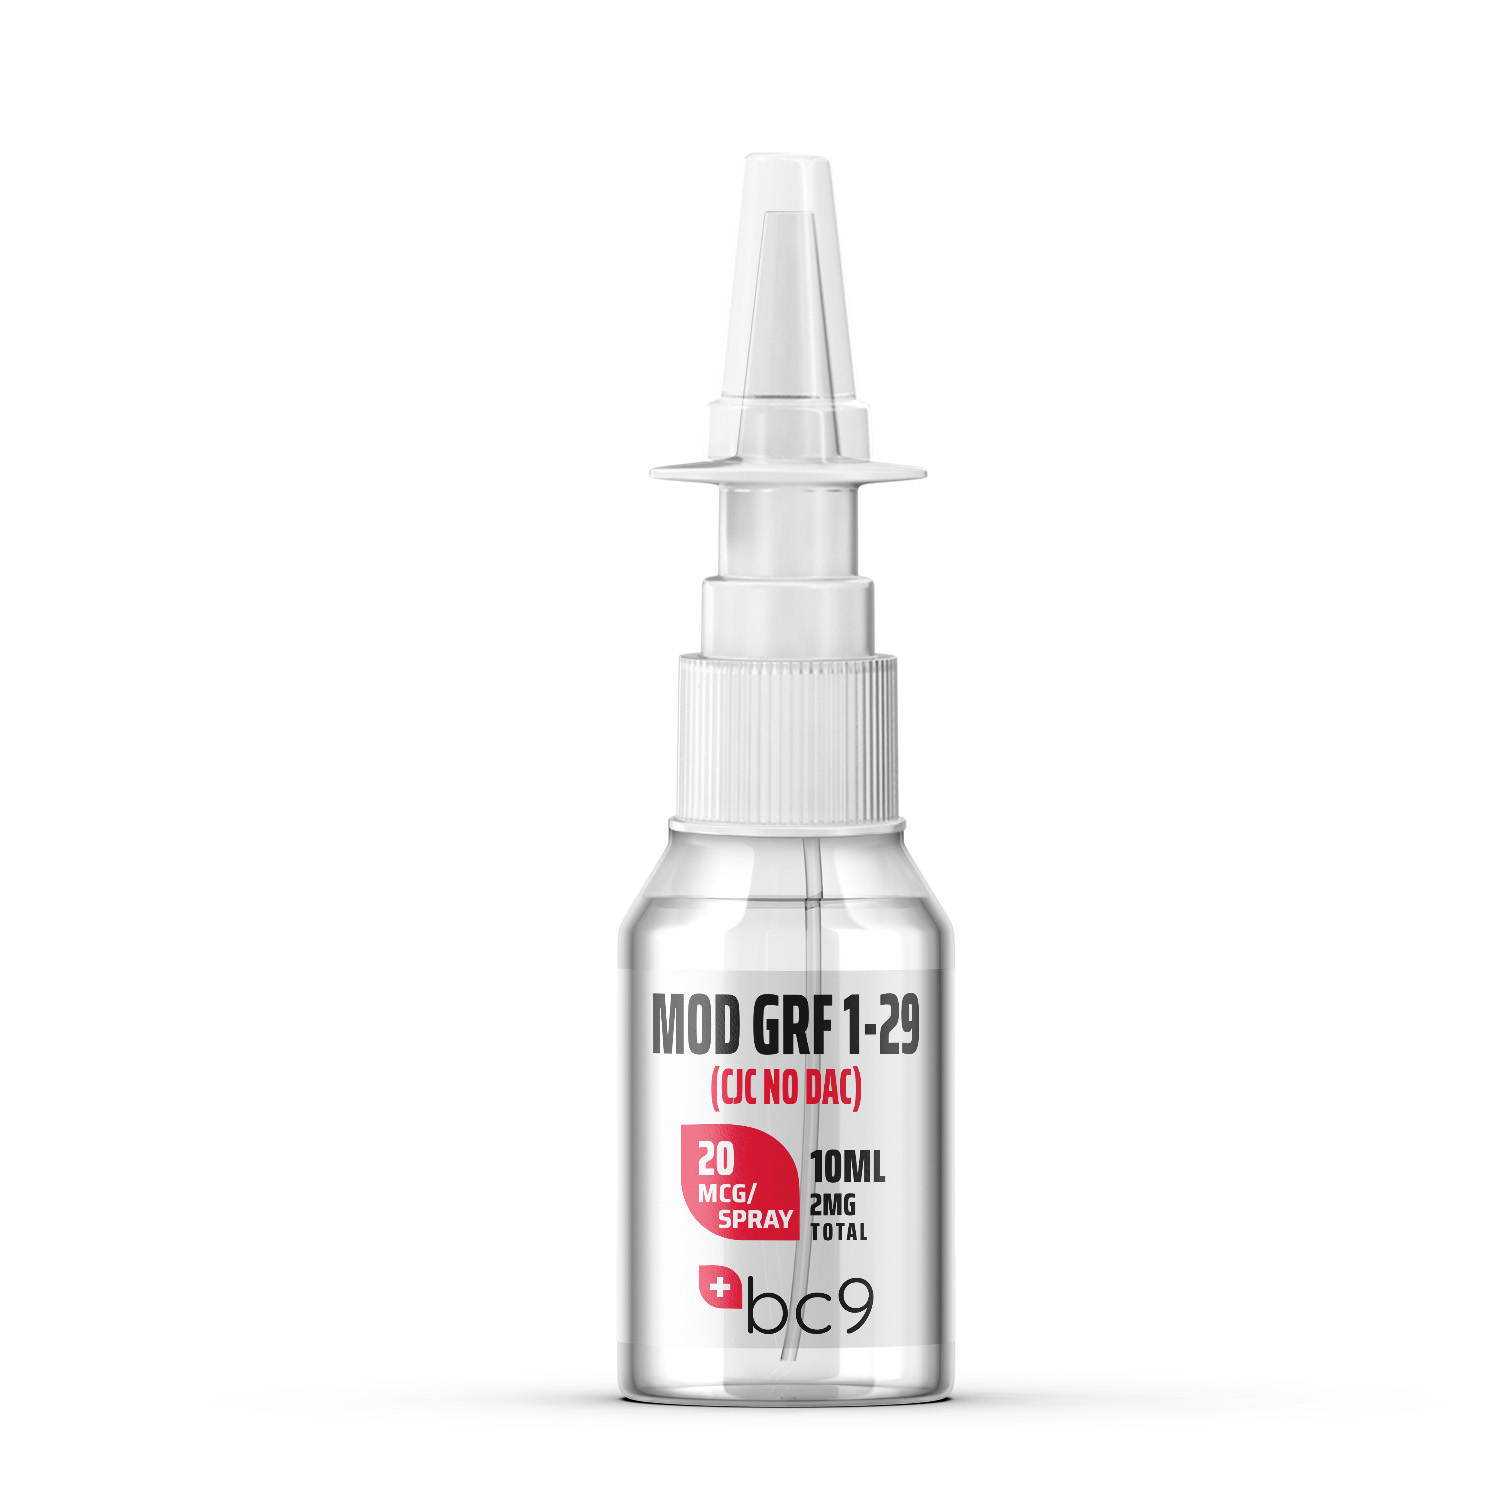 Mod GRF 1-29 (CJC-1295 No Dac) Nasal Spray For Sale